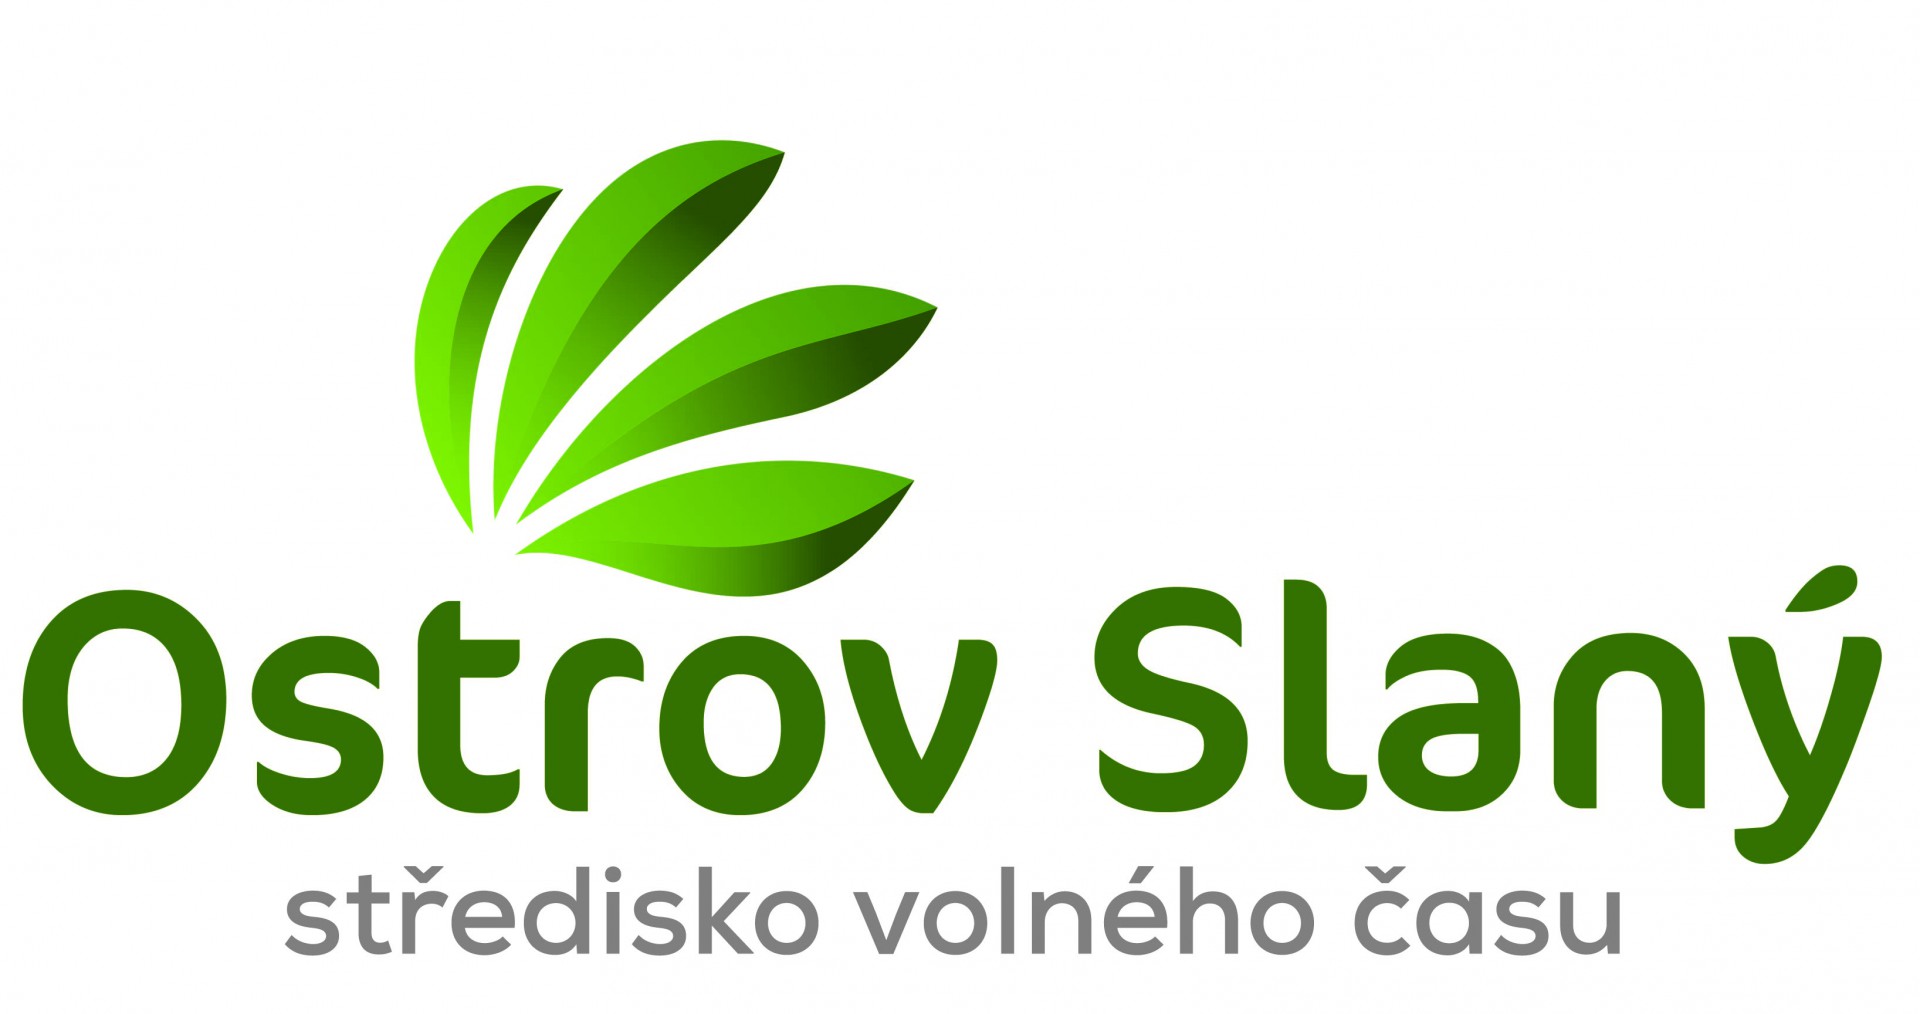 Ostrov Slaný, středisko volného času - logo